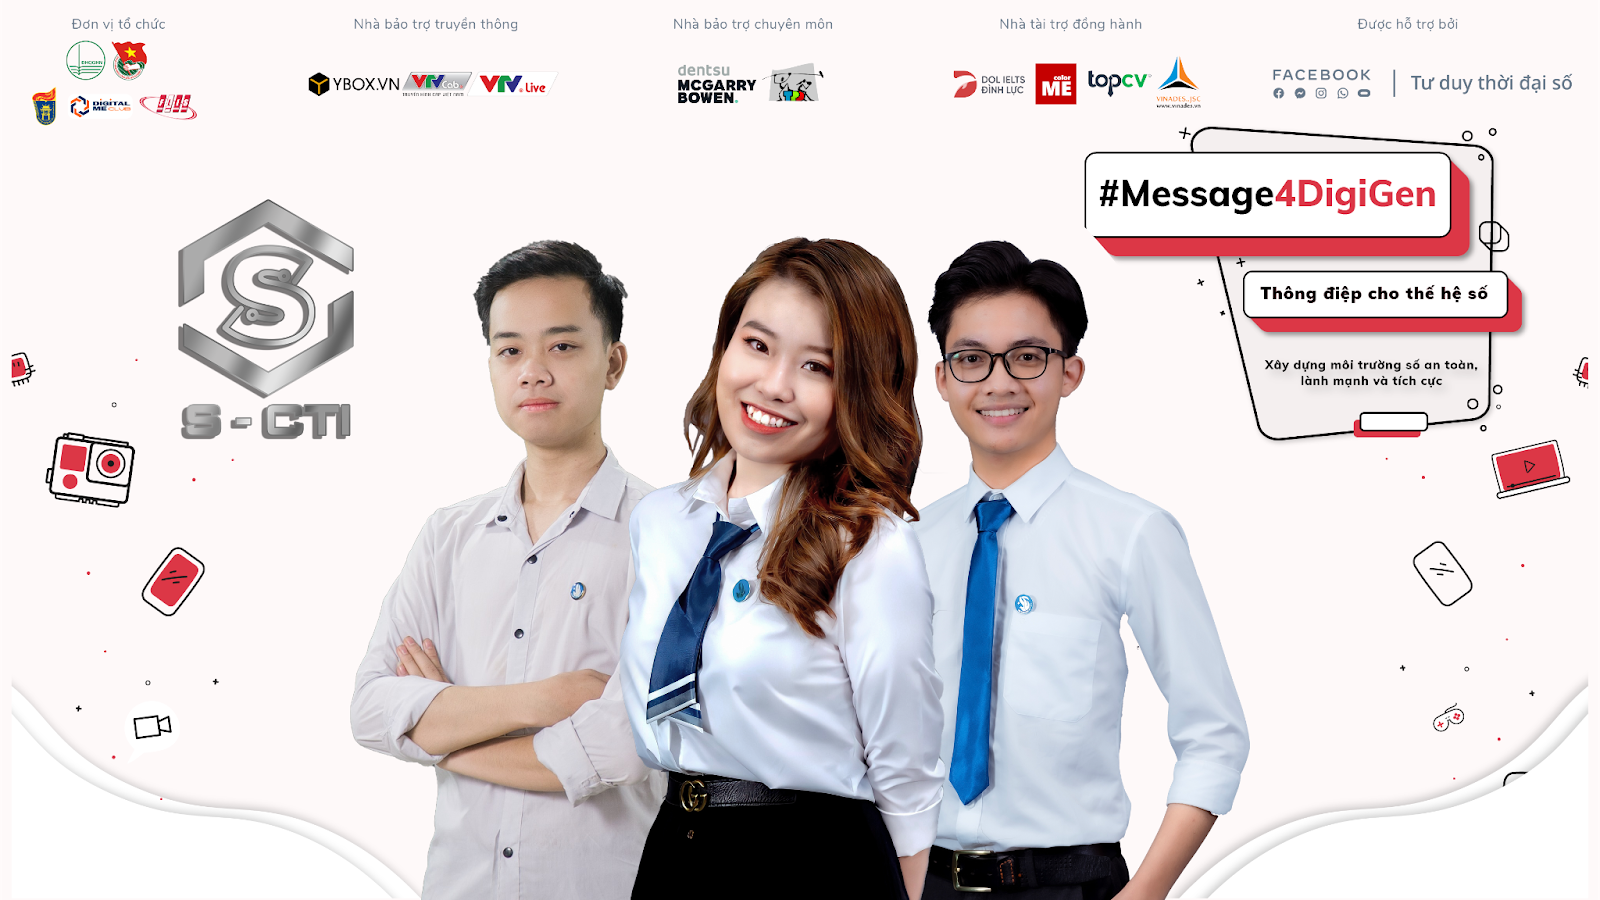 "Mạng xã hội hay 'mất mạng' xã hội" - Hành trình chinh phục ngôi vị Á quân 1 cuộc thi #Message4Digigen